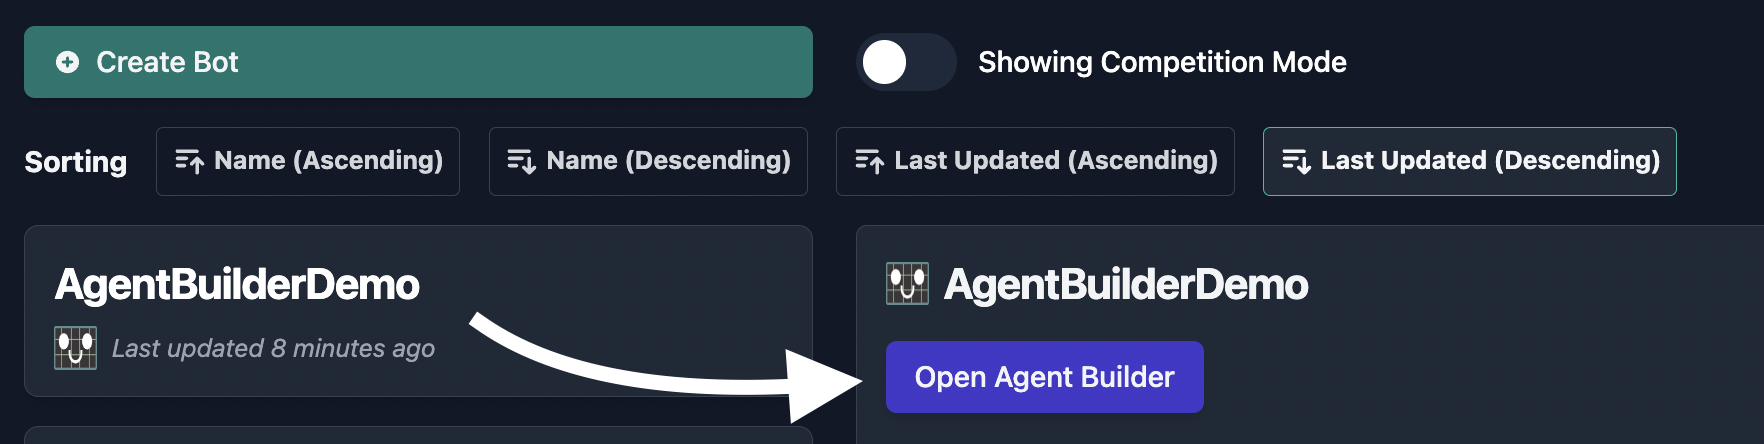 Open Agent Builder